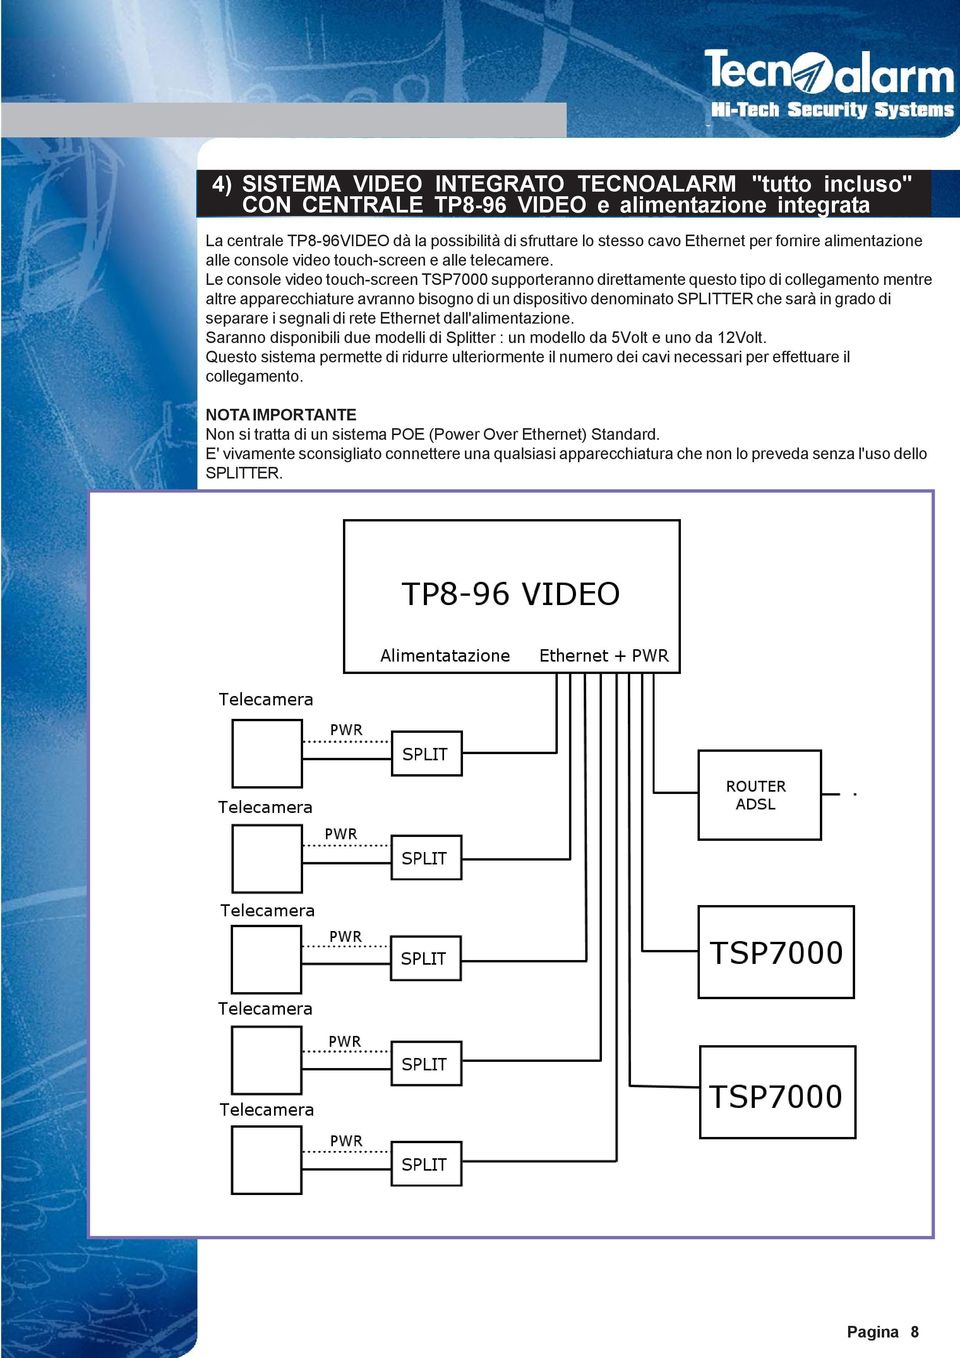 Le console video touch-screen TSP7000 supporteranno direttamente questo tipo di collegamento mentre altre apparecchiature avranno bisogno di un dispositivo denominato SPLITTER che sarà in grado di